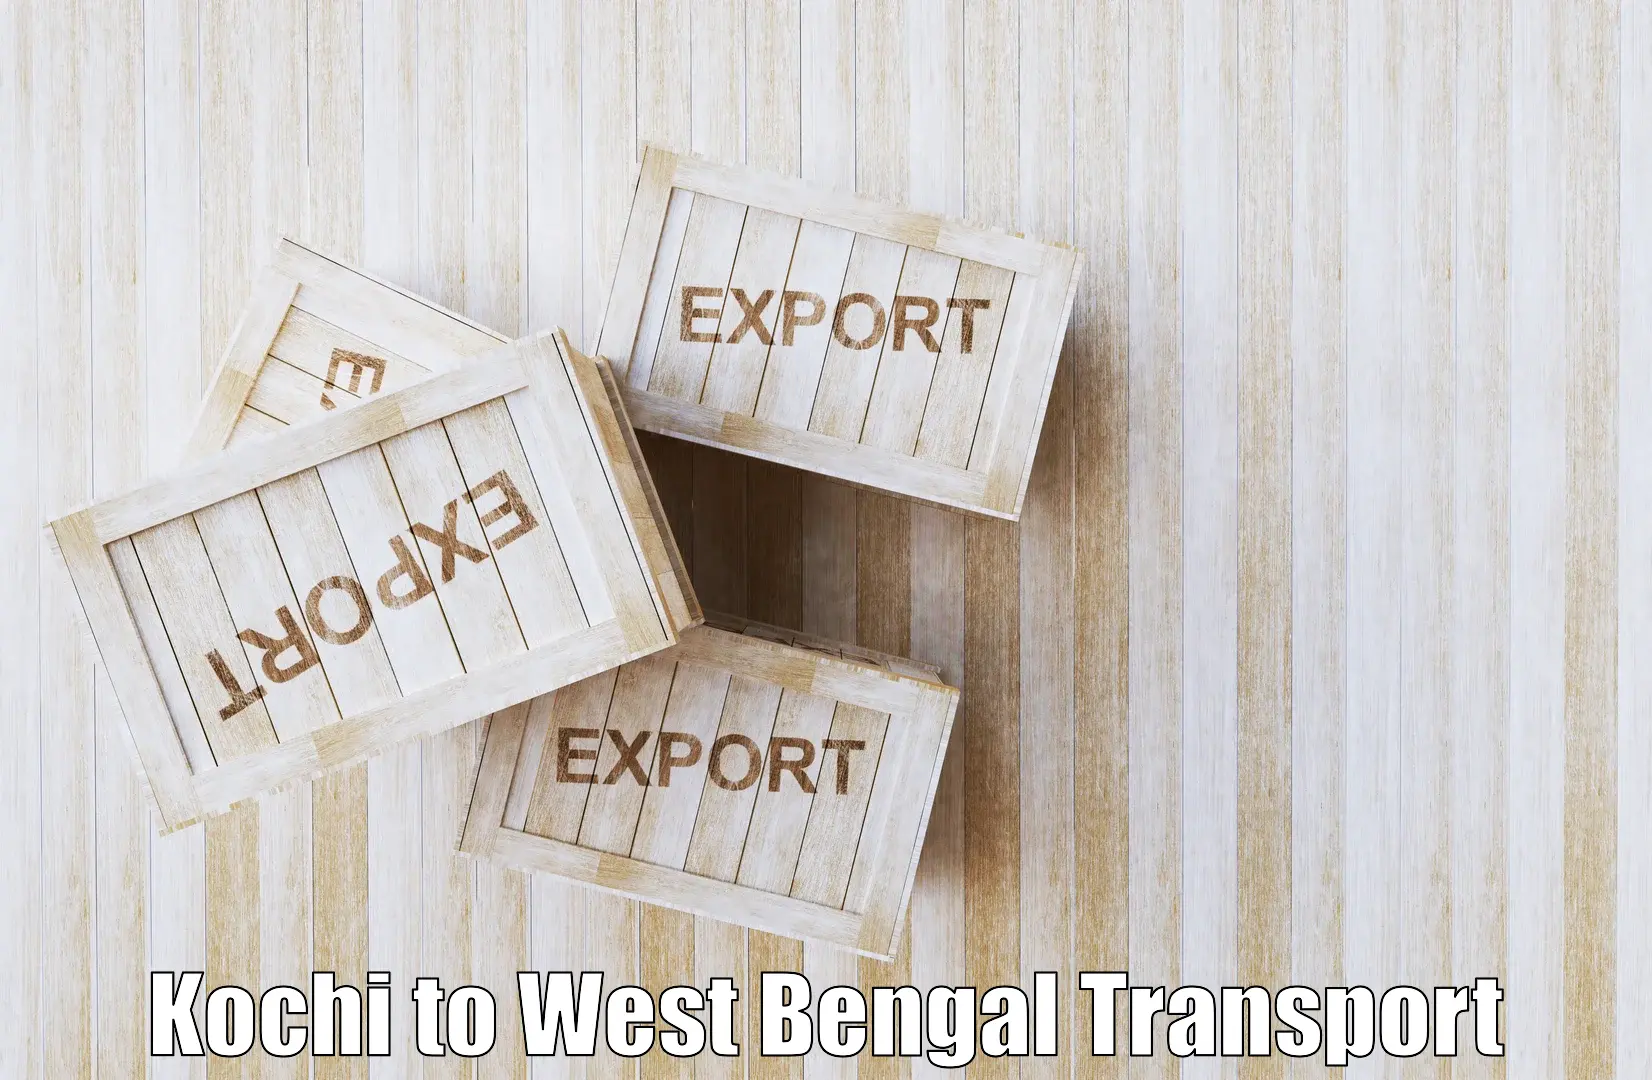 Air freight transport services in Kochi to Gopalnagar